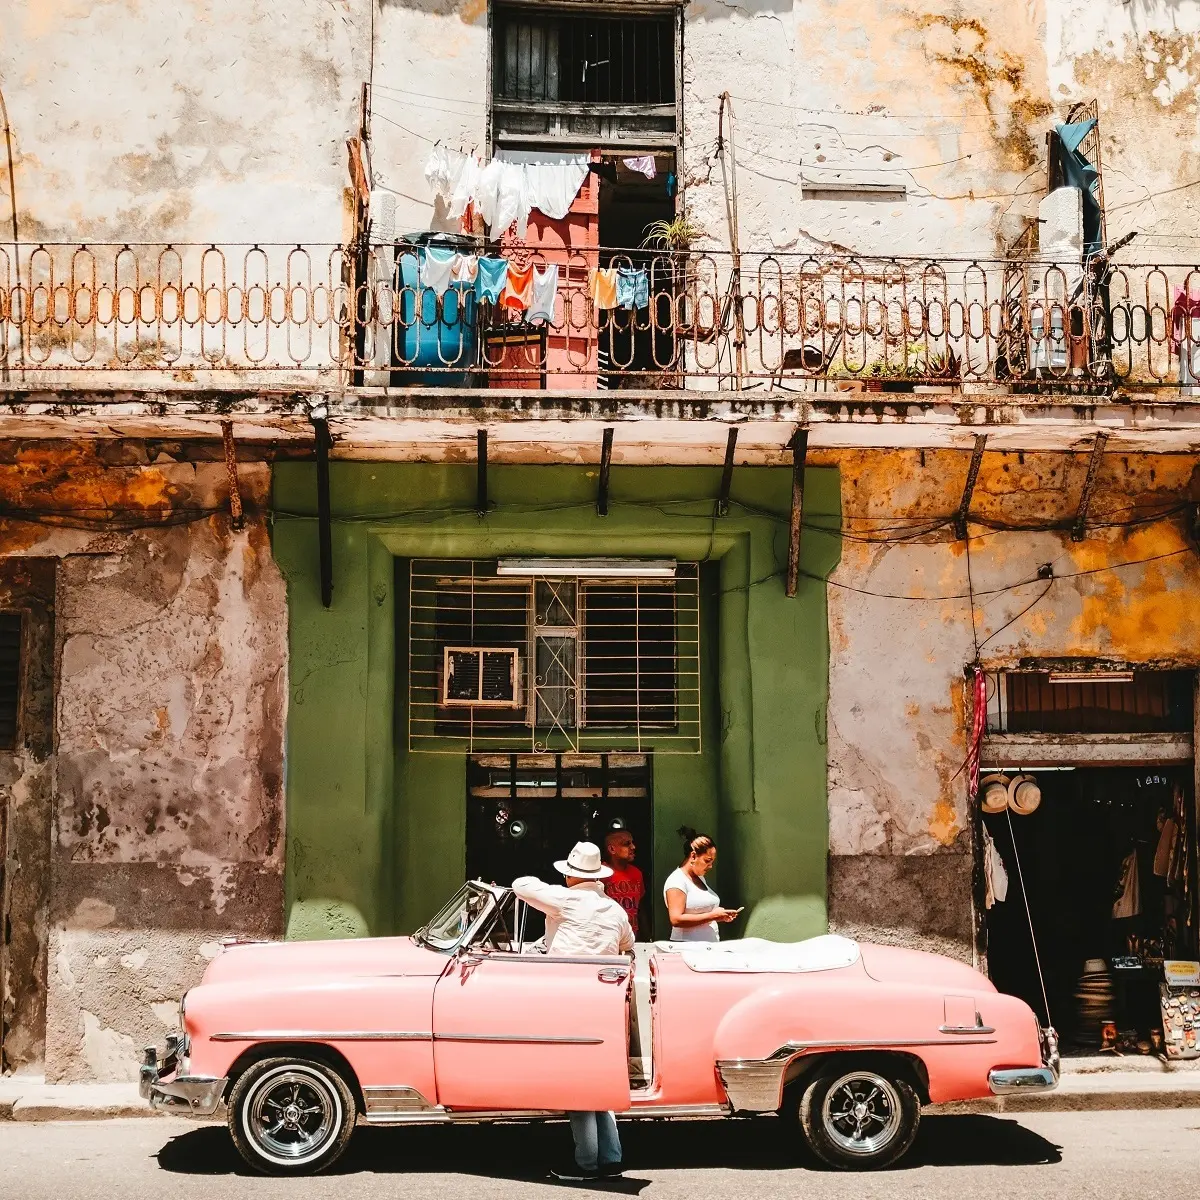 Πως είναι η ζωή στην Κούβα: Οδηγός ταξί